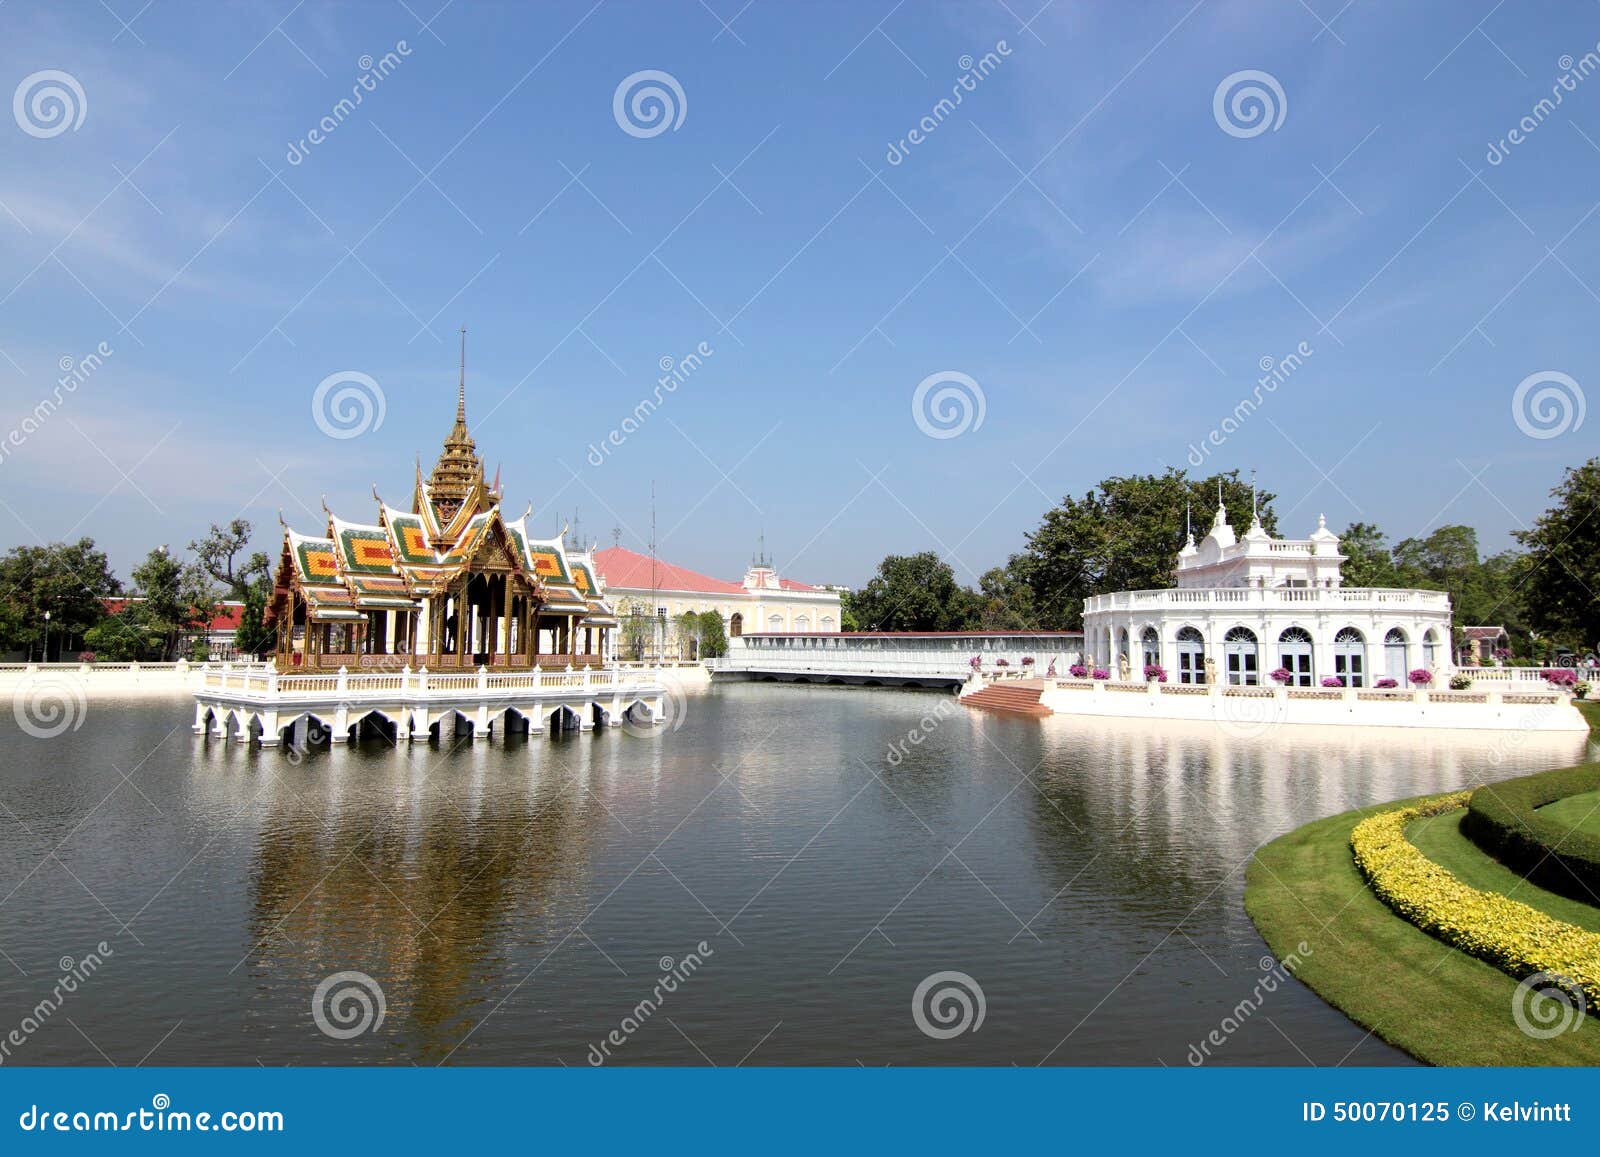 bang pa in royal palace, ayutthaya, thailand